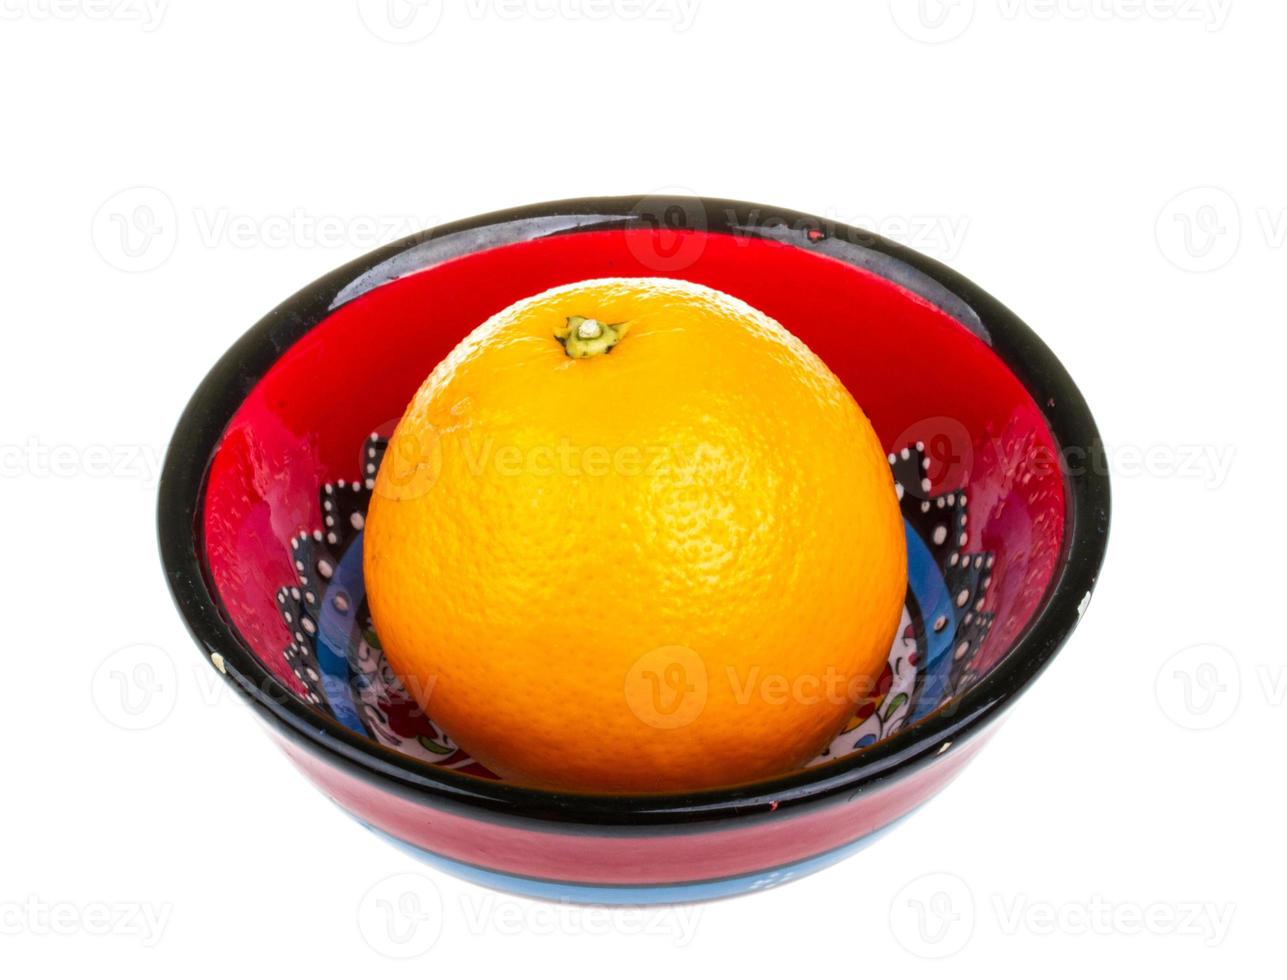 tas d'oranges dans le plat photo